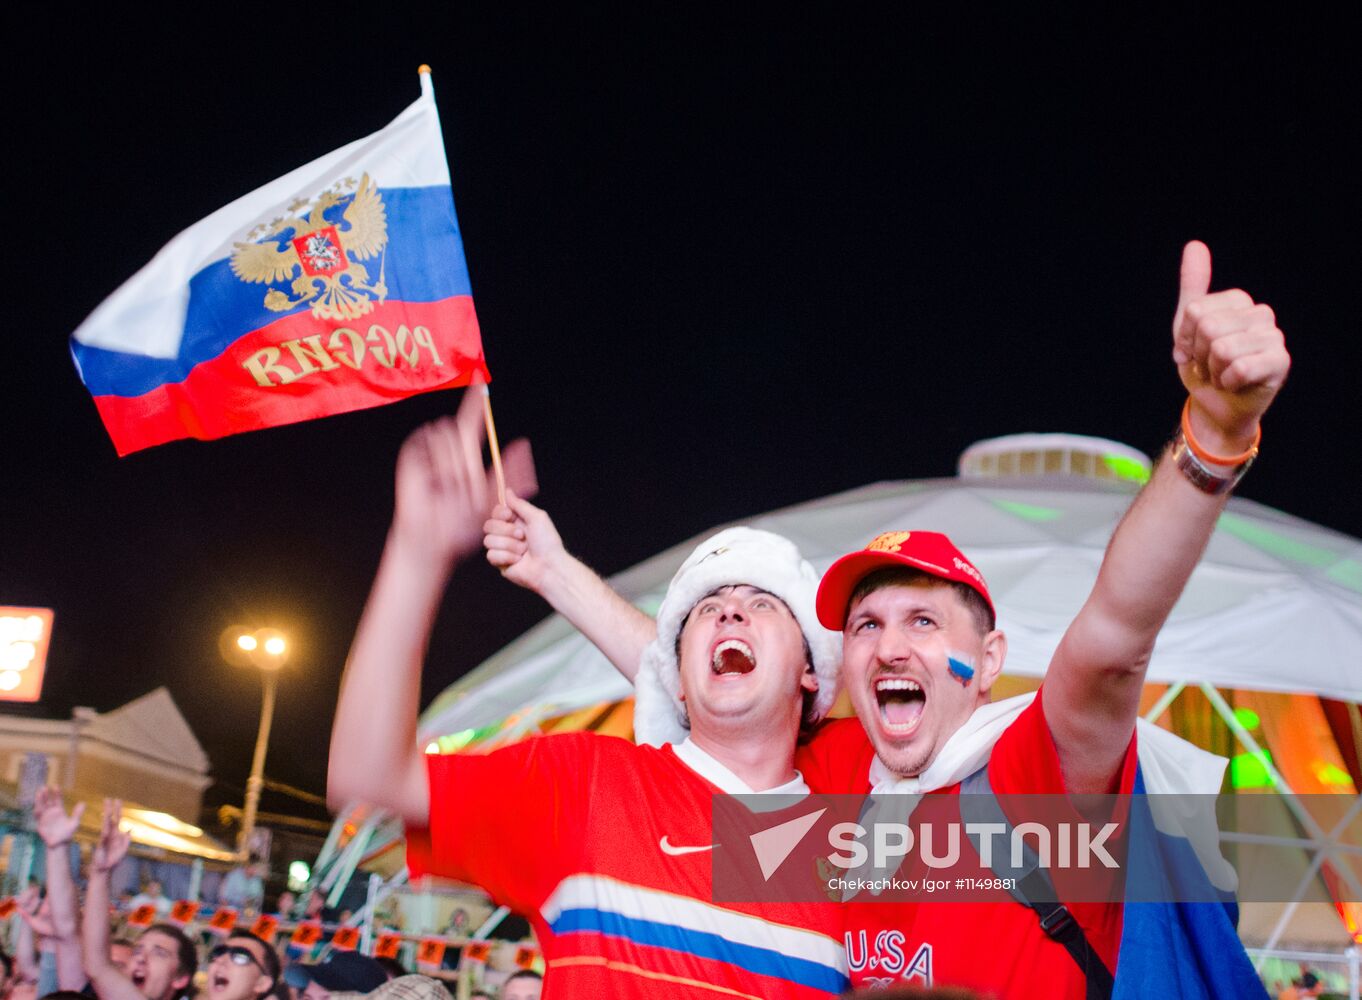 EURO 2012 fan zone in Kharkov